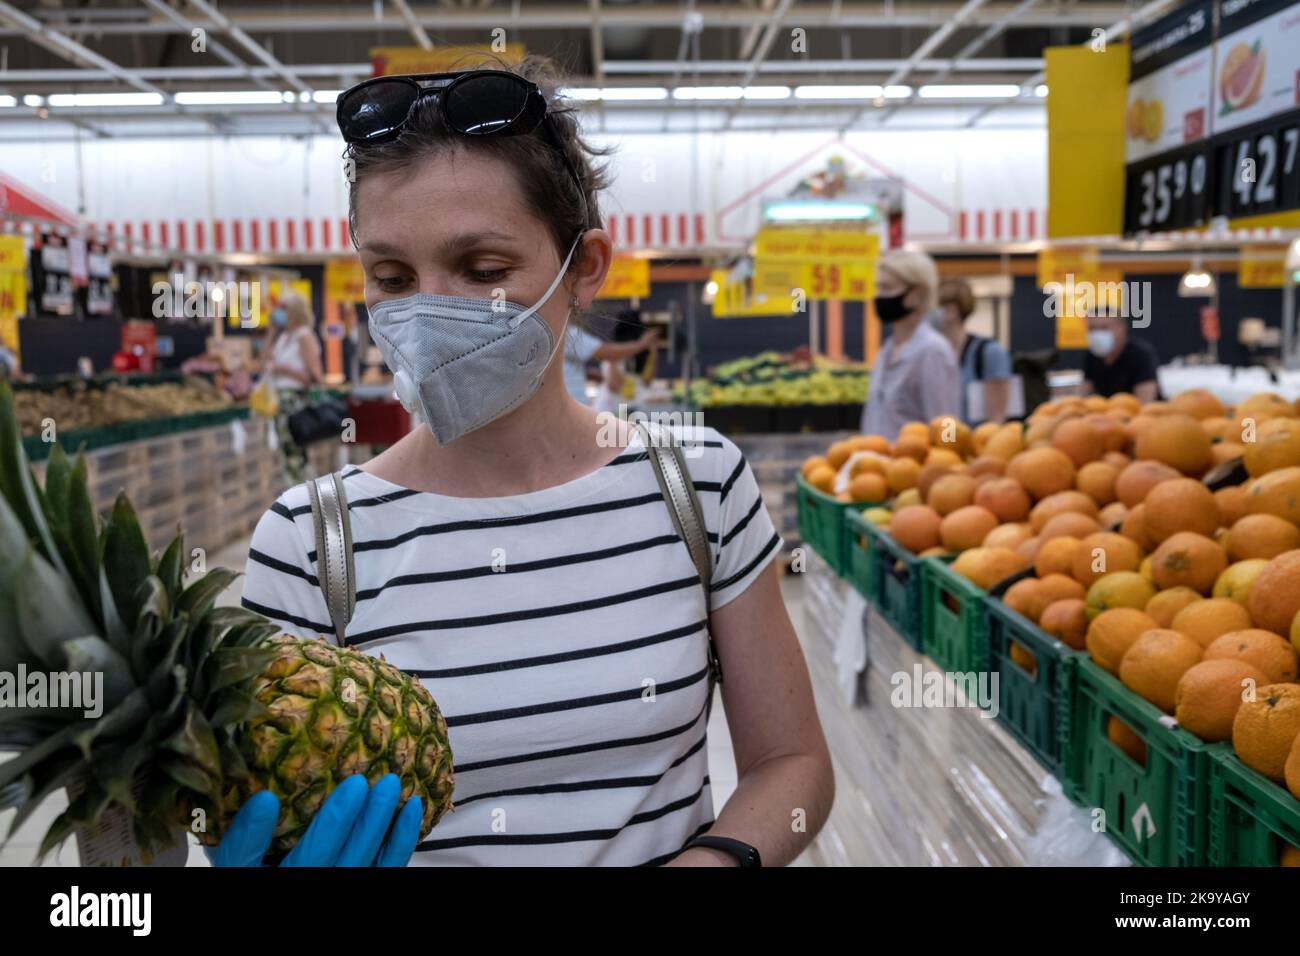 Asiatische Frau in Maske wählen Sie Obst Artikel in Supermärkten zu kaufen Stockfoto